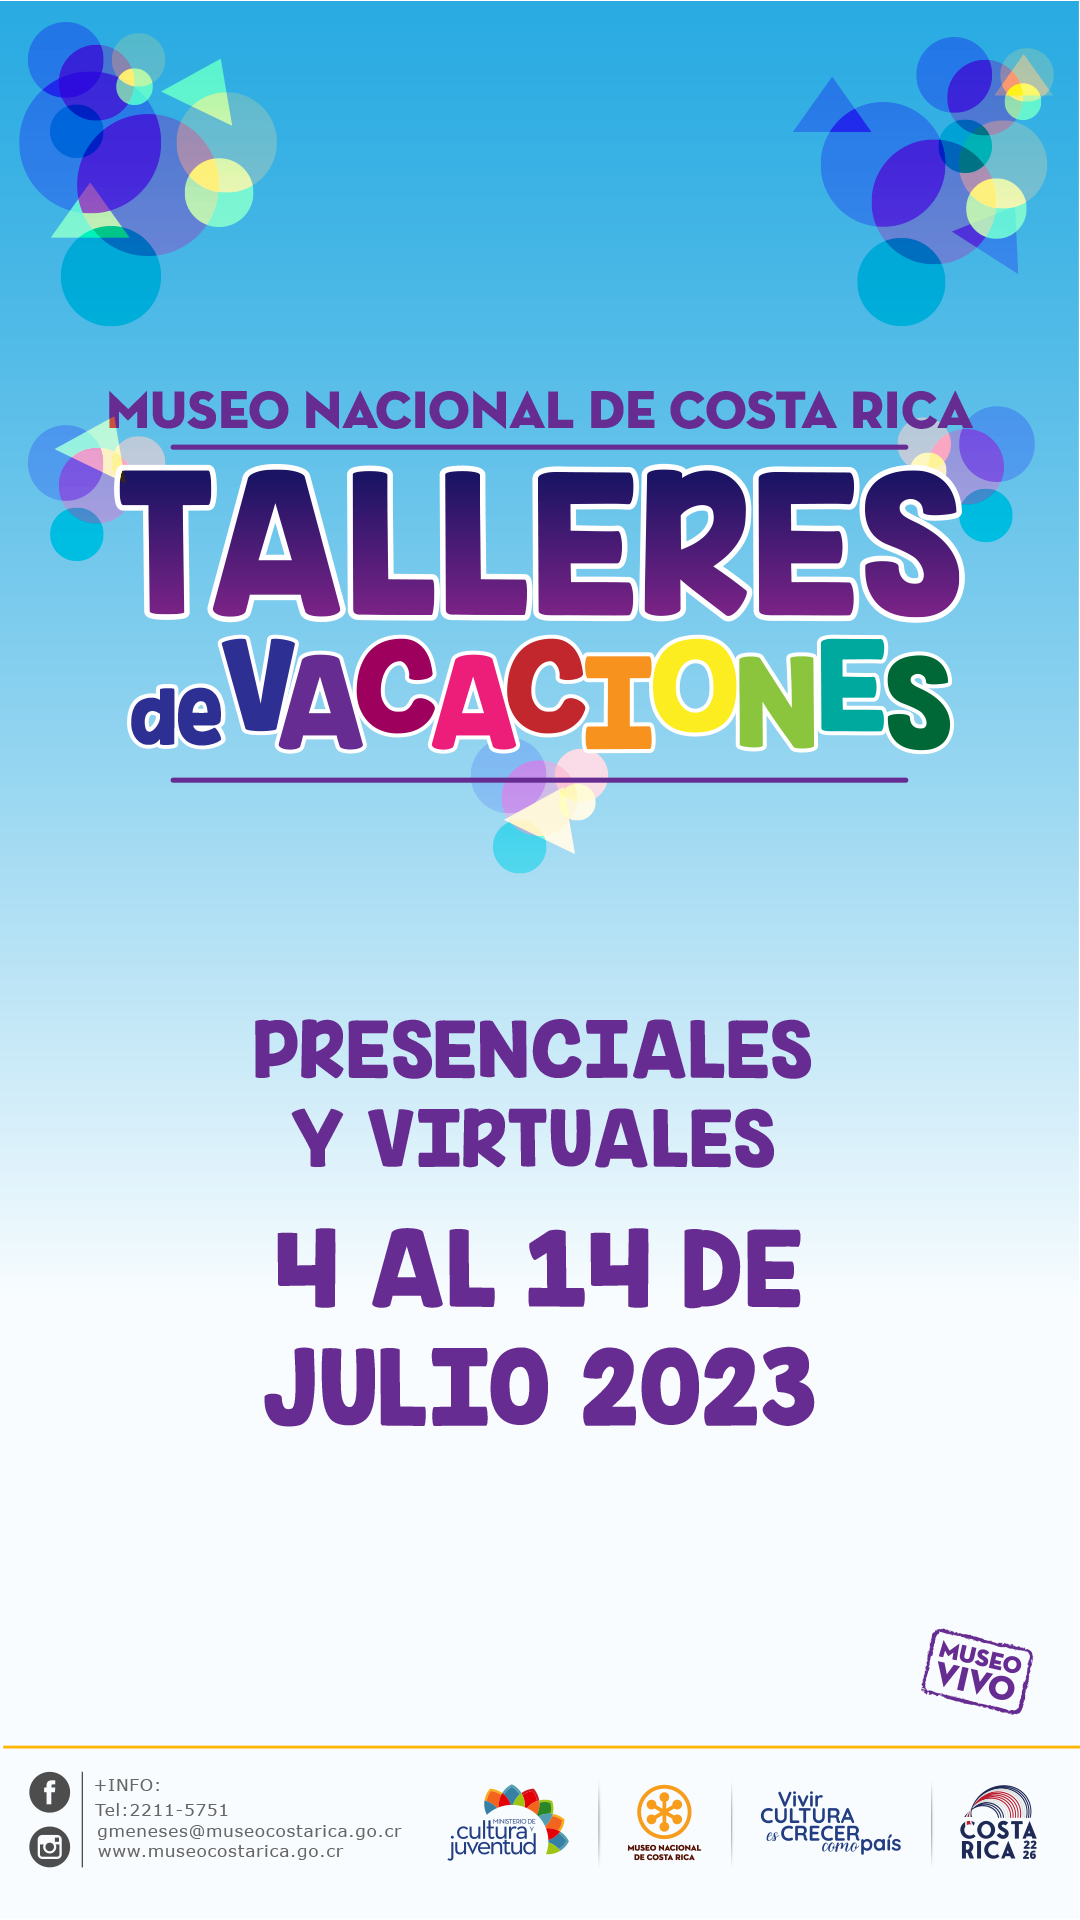 Talleres julio 2023 Museo Nacional de Costa Rica